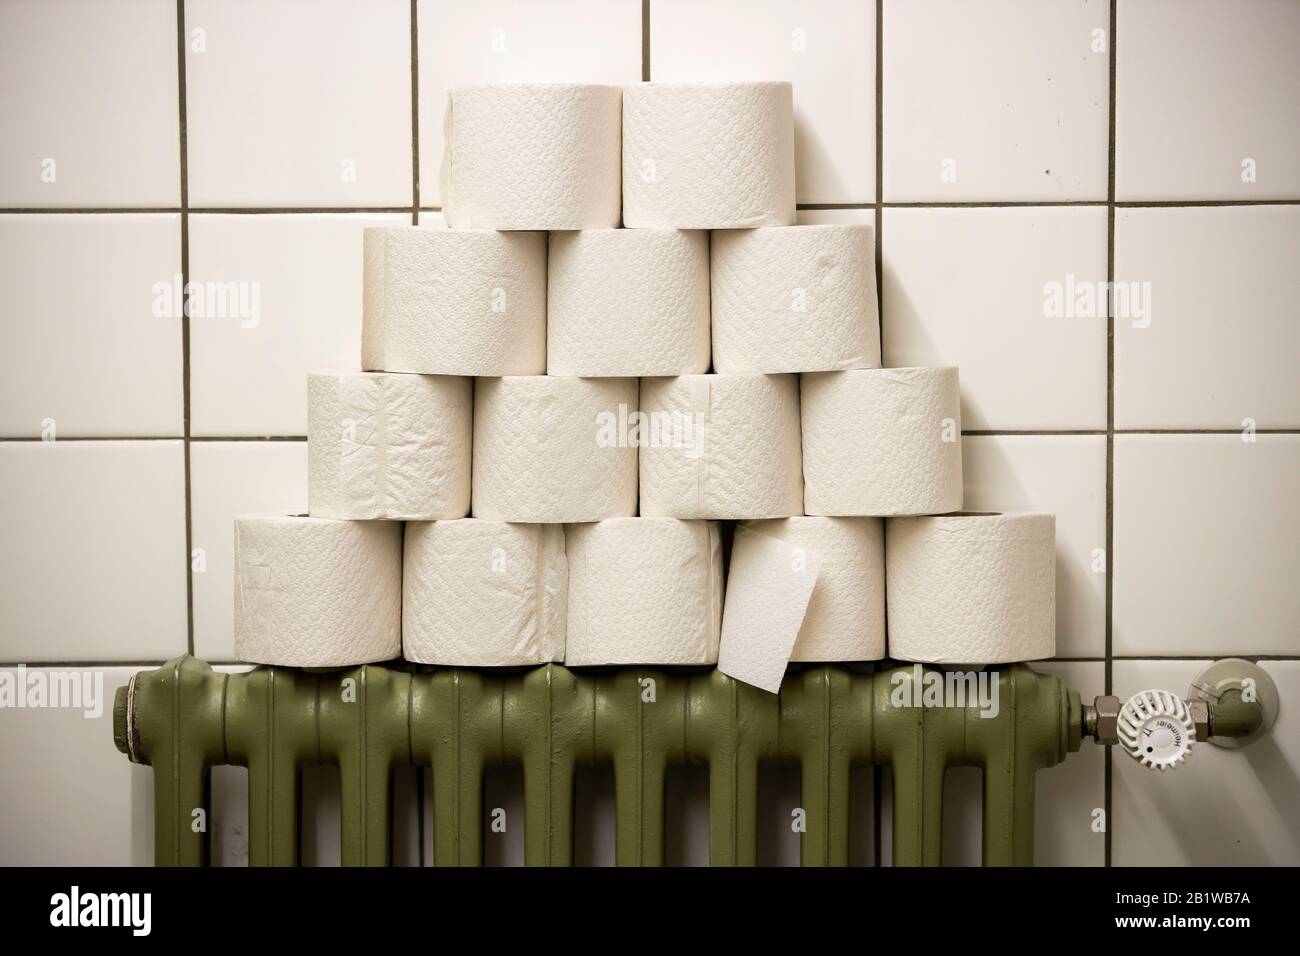 Rouleaux de papier toilette empilés sur un radiateur, dans des toilettes publiques Banque D'Images